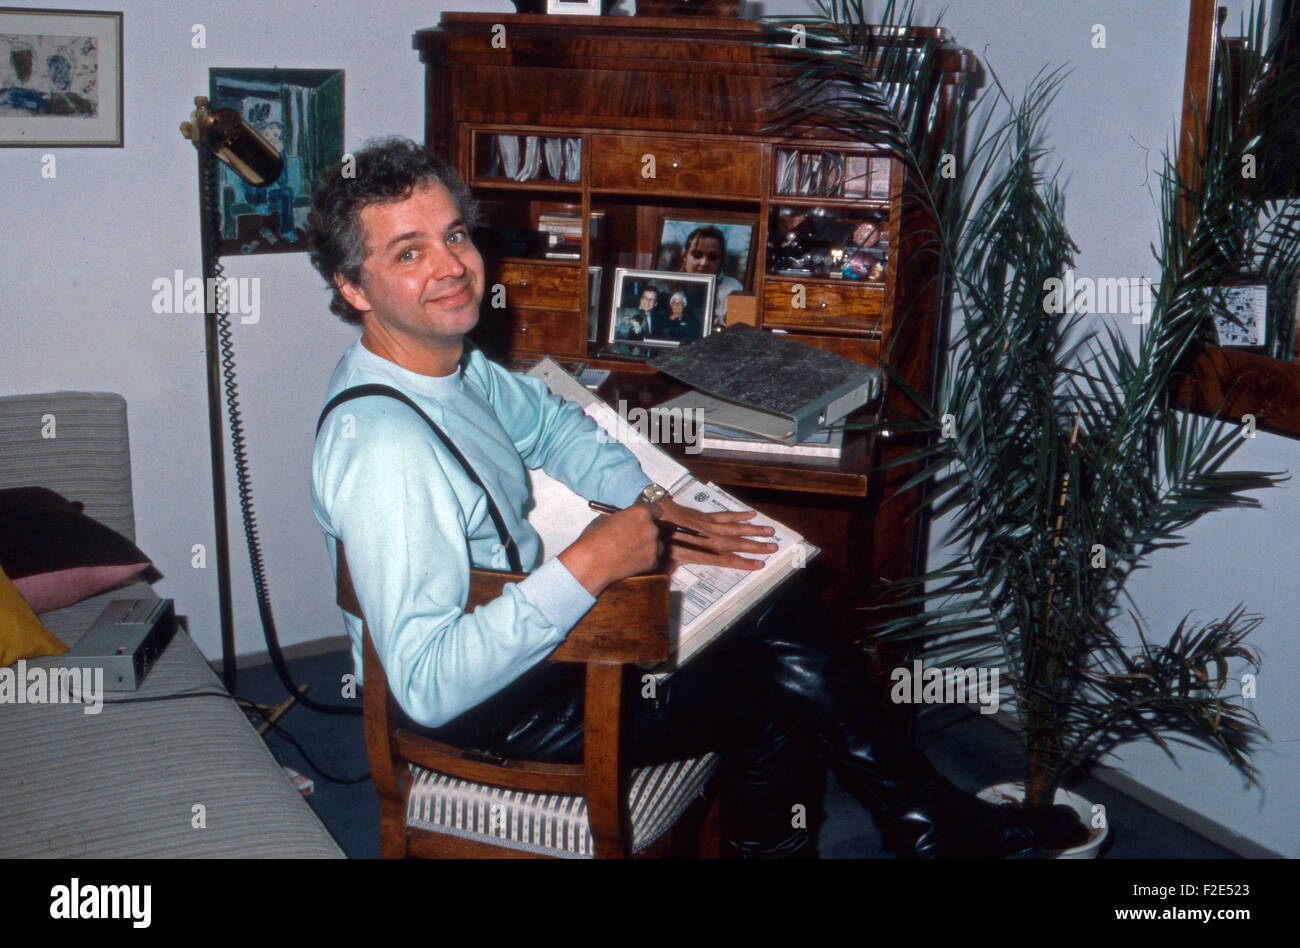 Der deutsche Schauspieler Michael Ee am Schreibtisch, Deutschland 1980er Jahre. Attore tedesco Michael Ee alla sua scrivania, Deutschland degli anni ottanta. 24x36WB12 Foto Stock